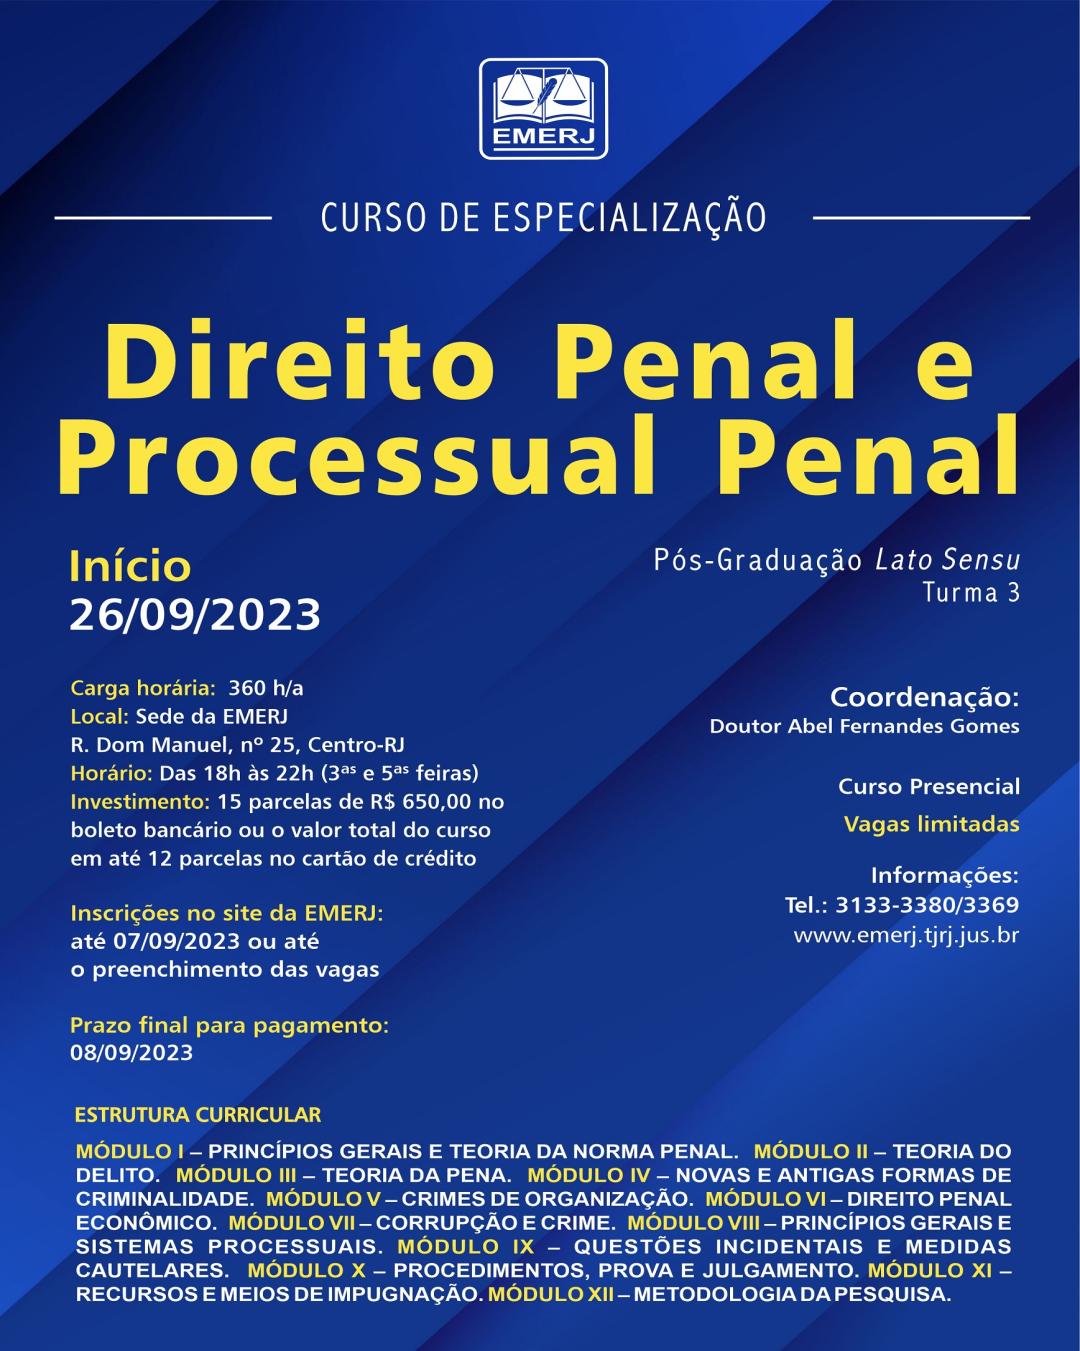 Imagem do banner principal do curso - CURSO DE ESPECIALIZAÇÃO EM DIREITO PENAL E PROCESSUAL PENAL – TURMA 3